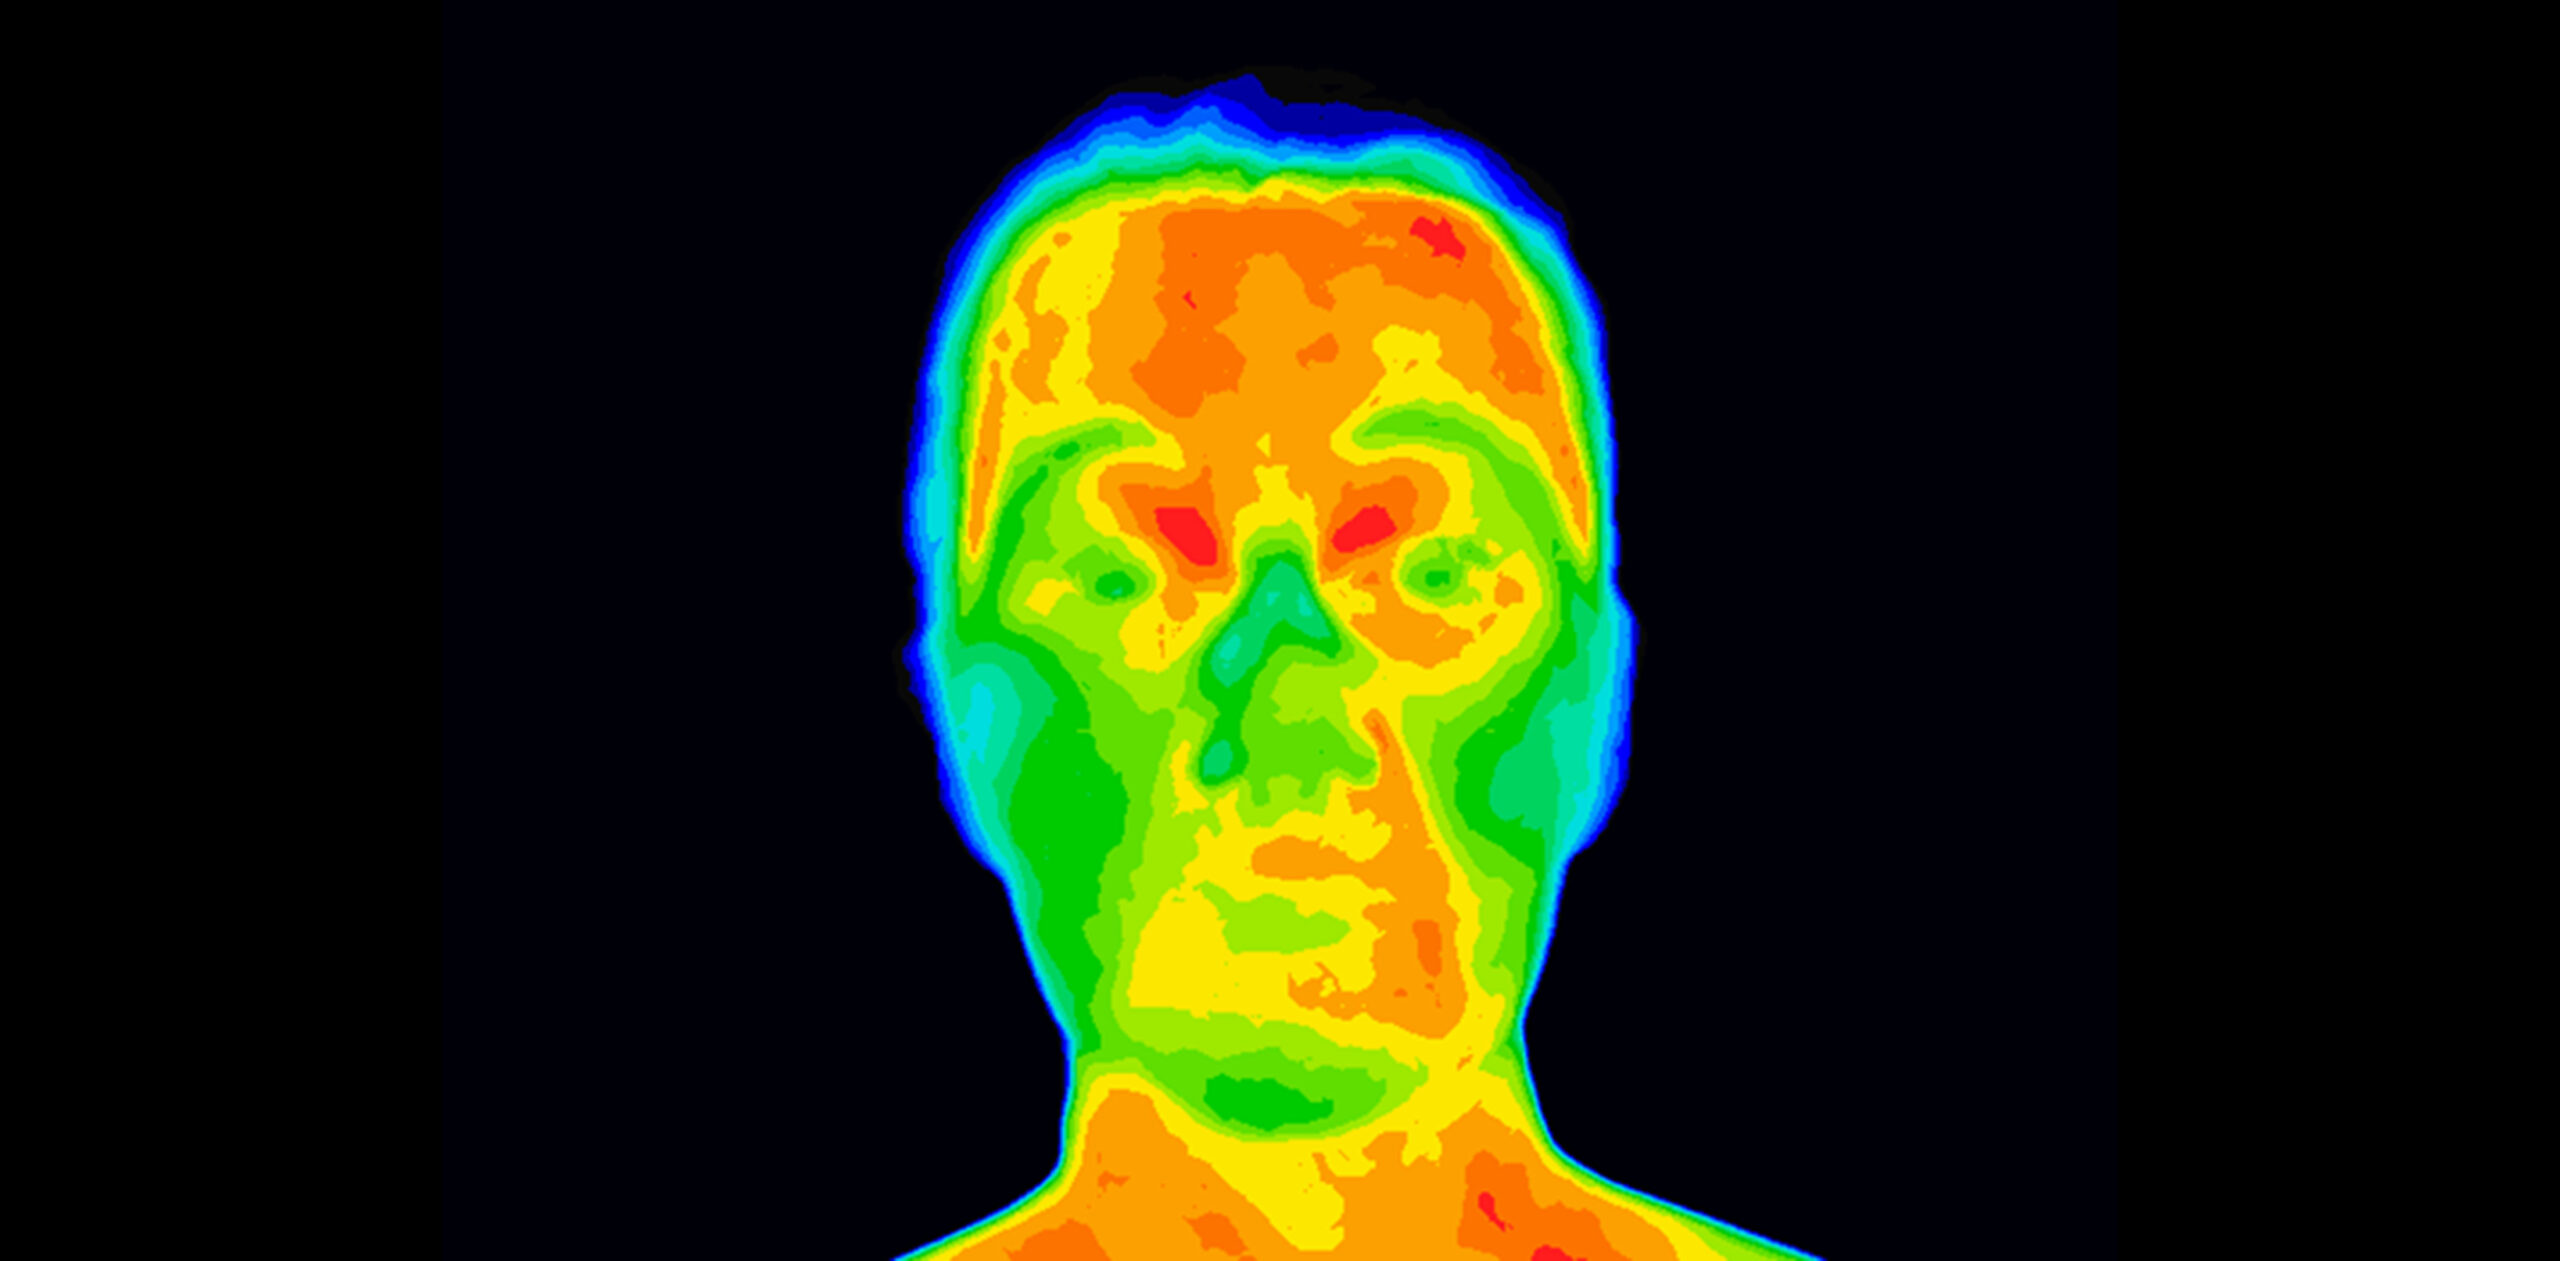 Thermal imaging